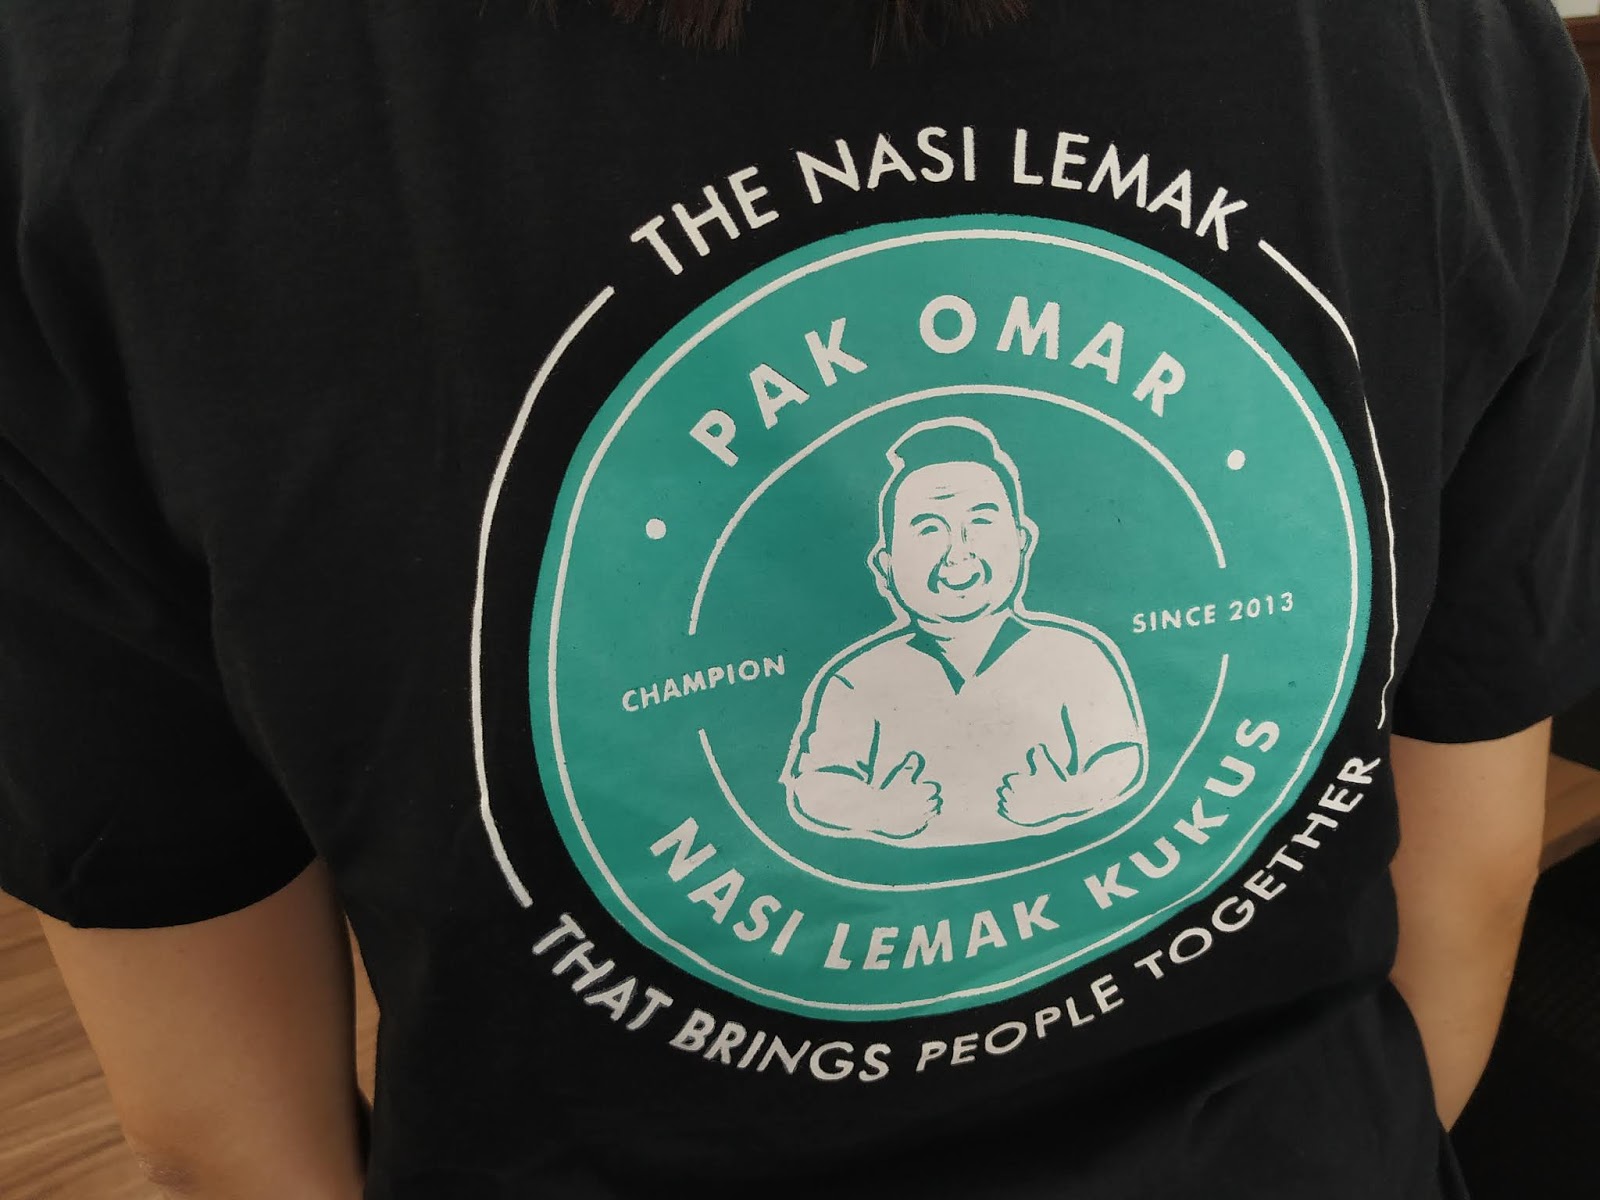 PAK OMAR CHAMPION NASI LEMAK, MEMANG CHAMPION SEJAK 2013!